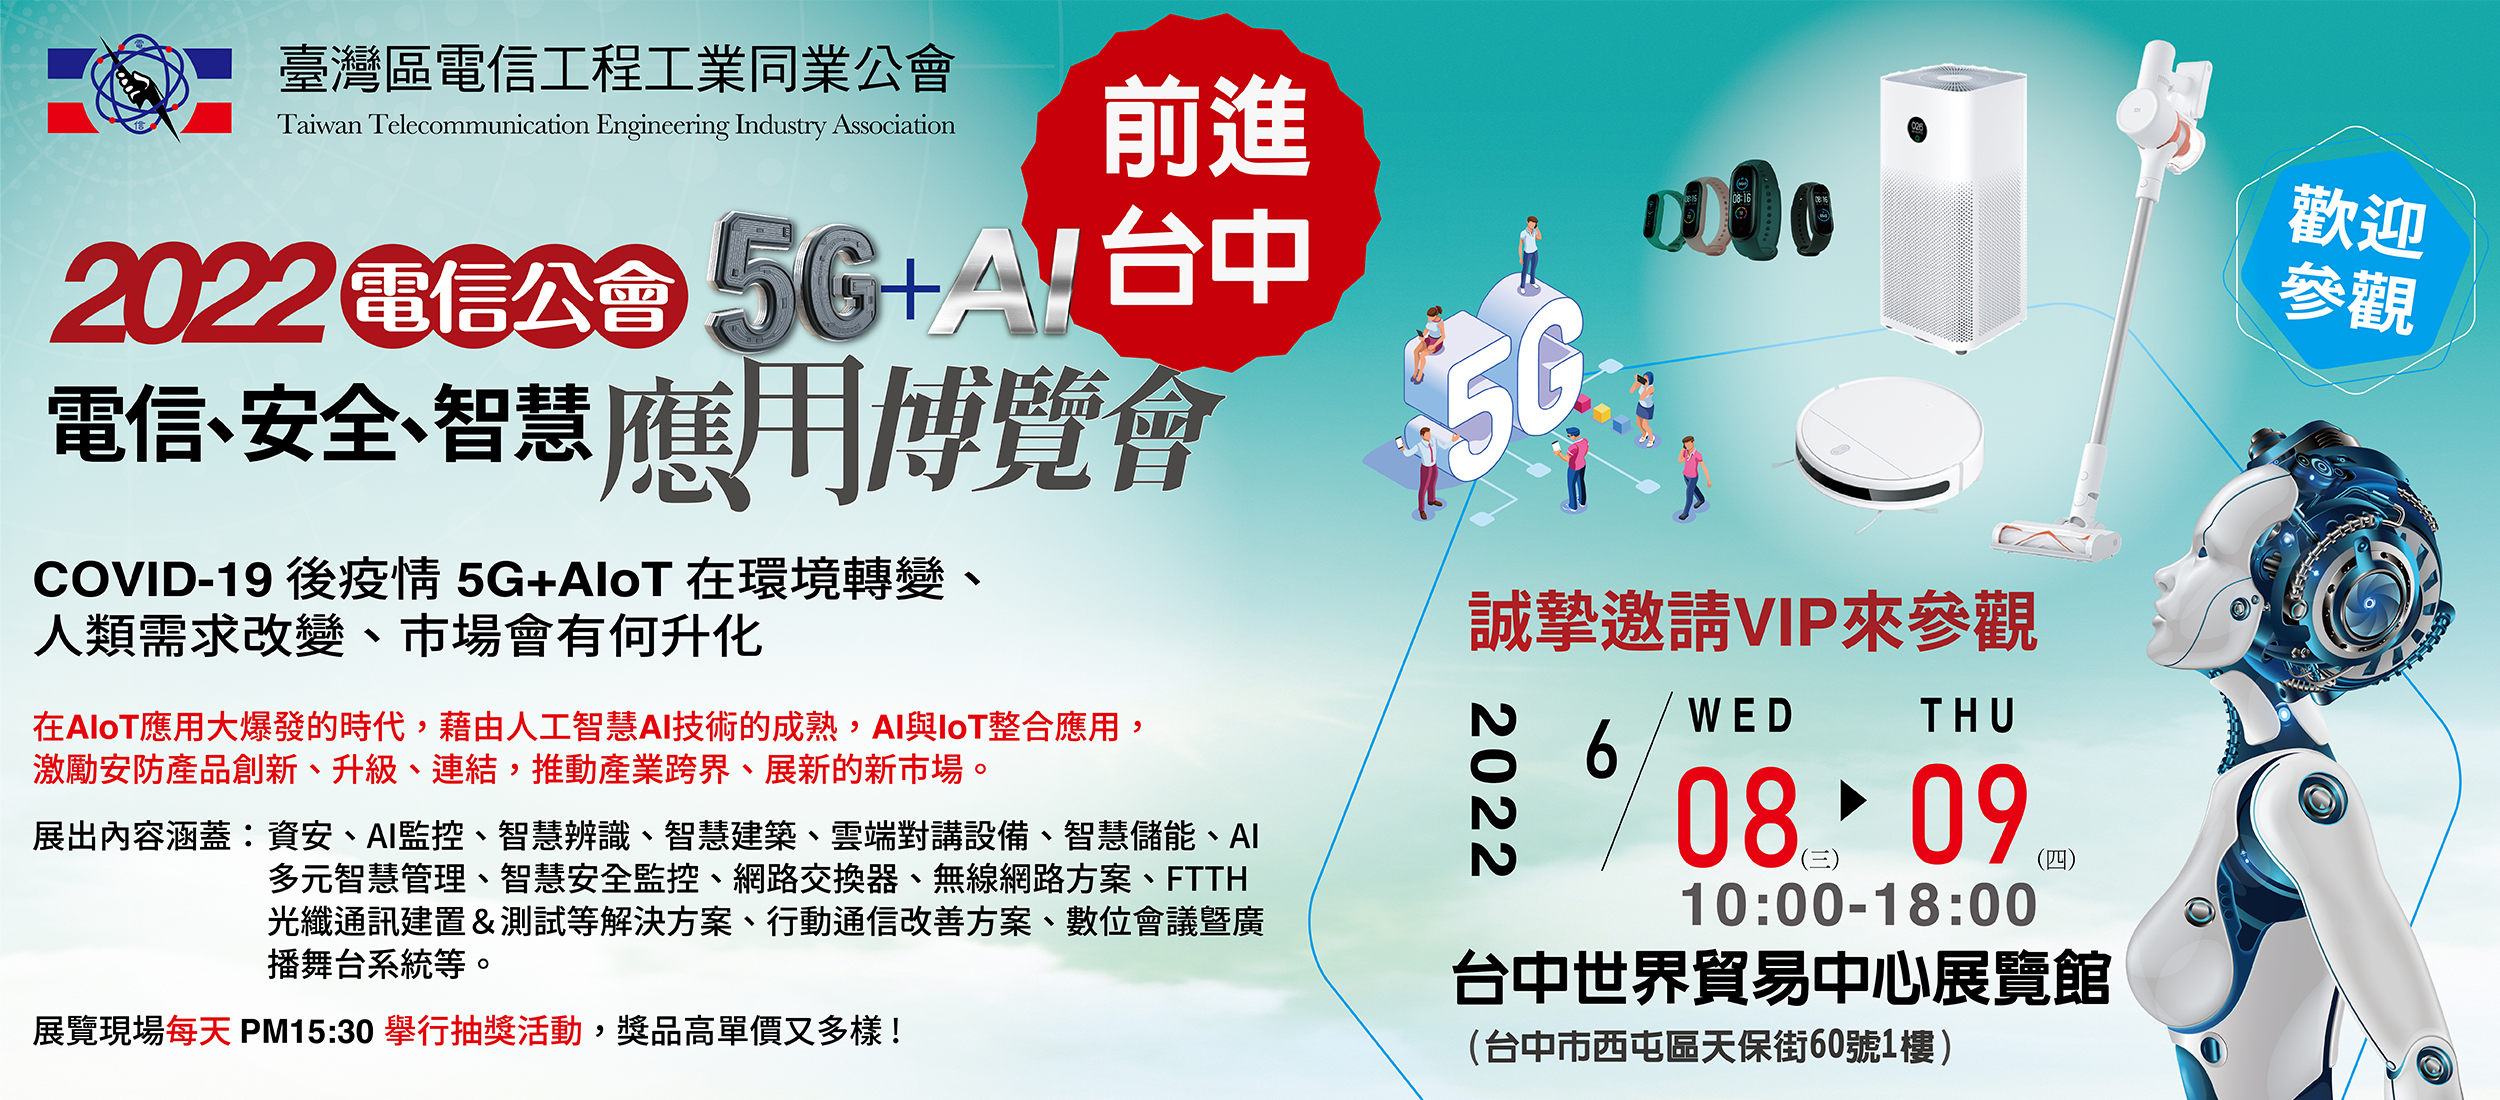 DJS台灣首選監控品牌-2022電信公會5G+AI電信、安全、智慧應用博覽會—台中場